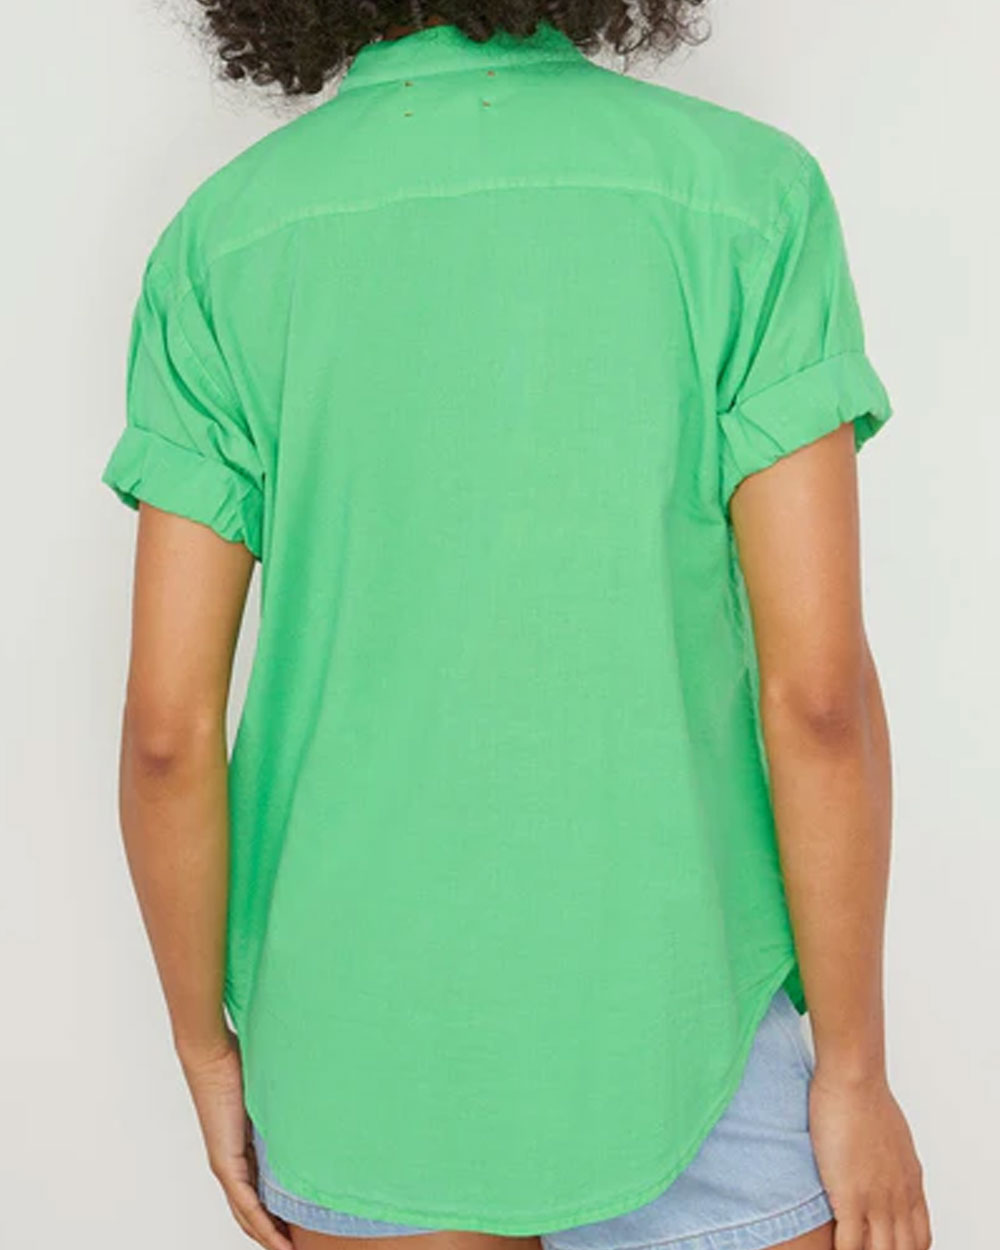 Green Glow Channing Shirt